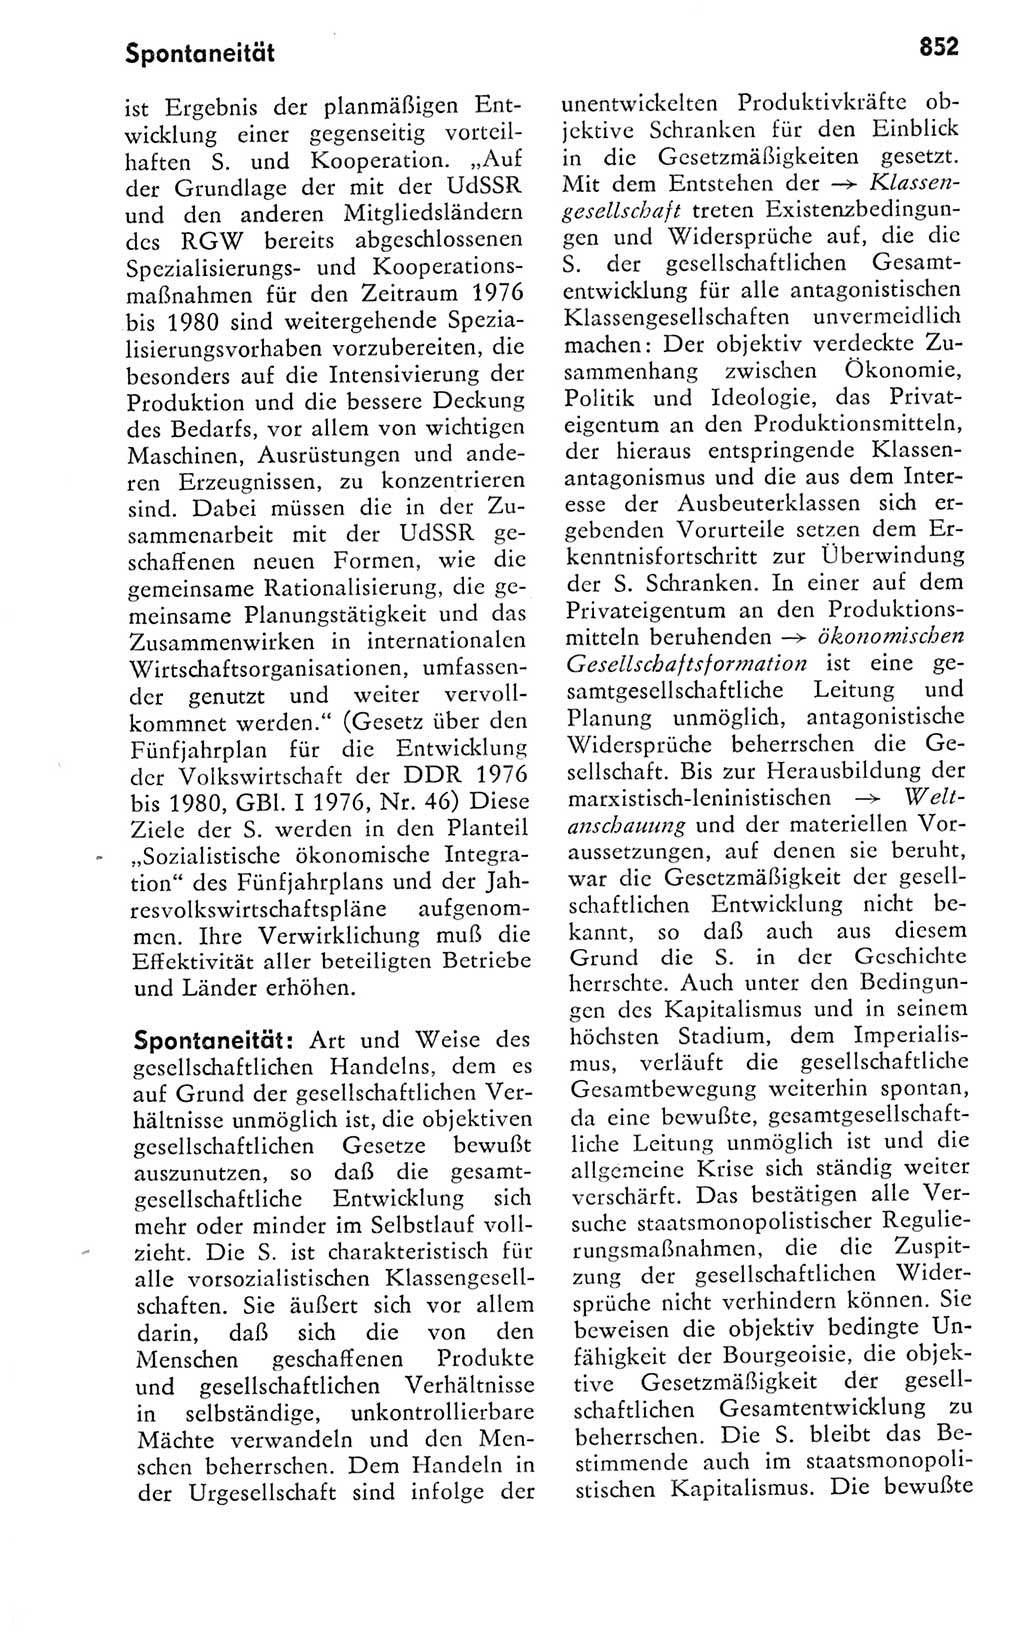 Kleines politisches Wörterbuch [Deutsche Demokratische Republik (DDR)] 1978, Seite 852 (Kl. pol. Wb. DDR 1978, S. 852)